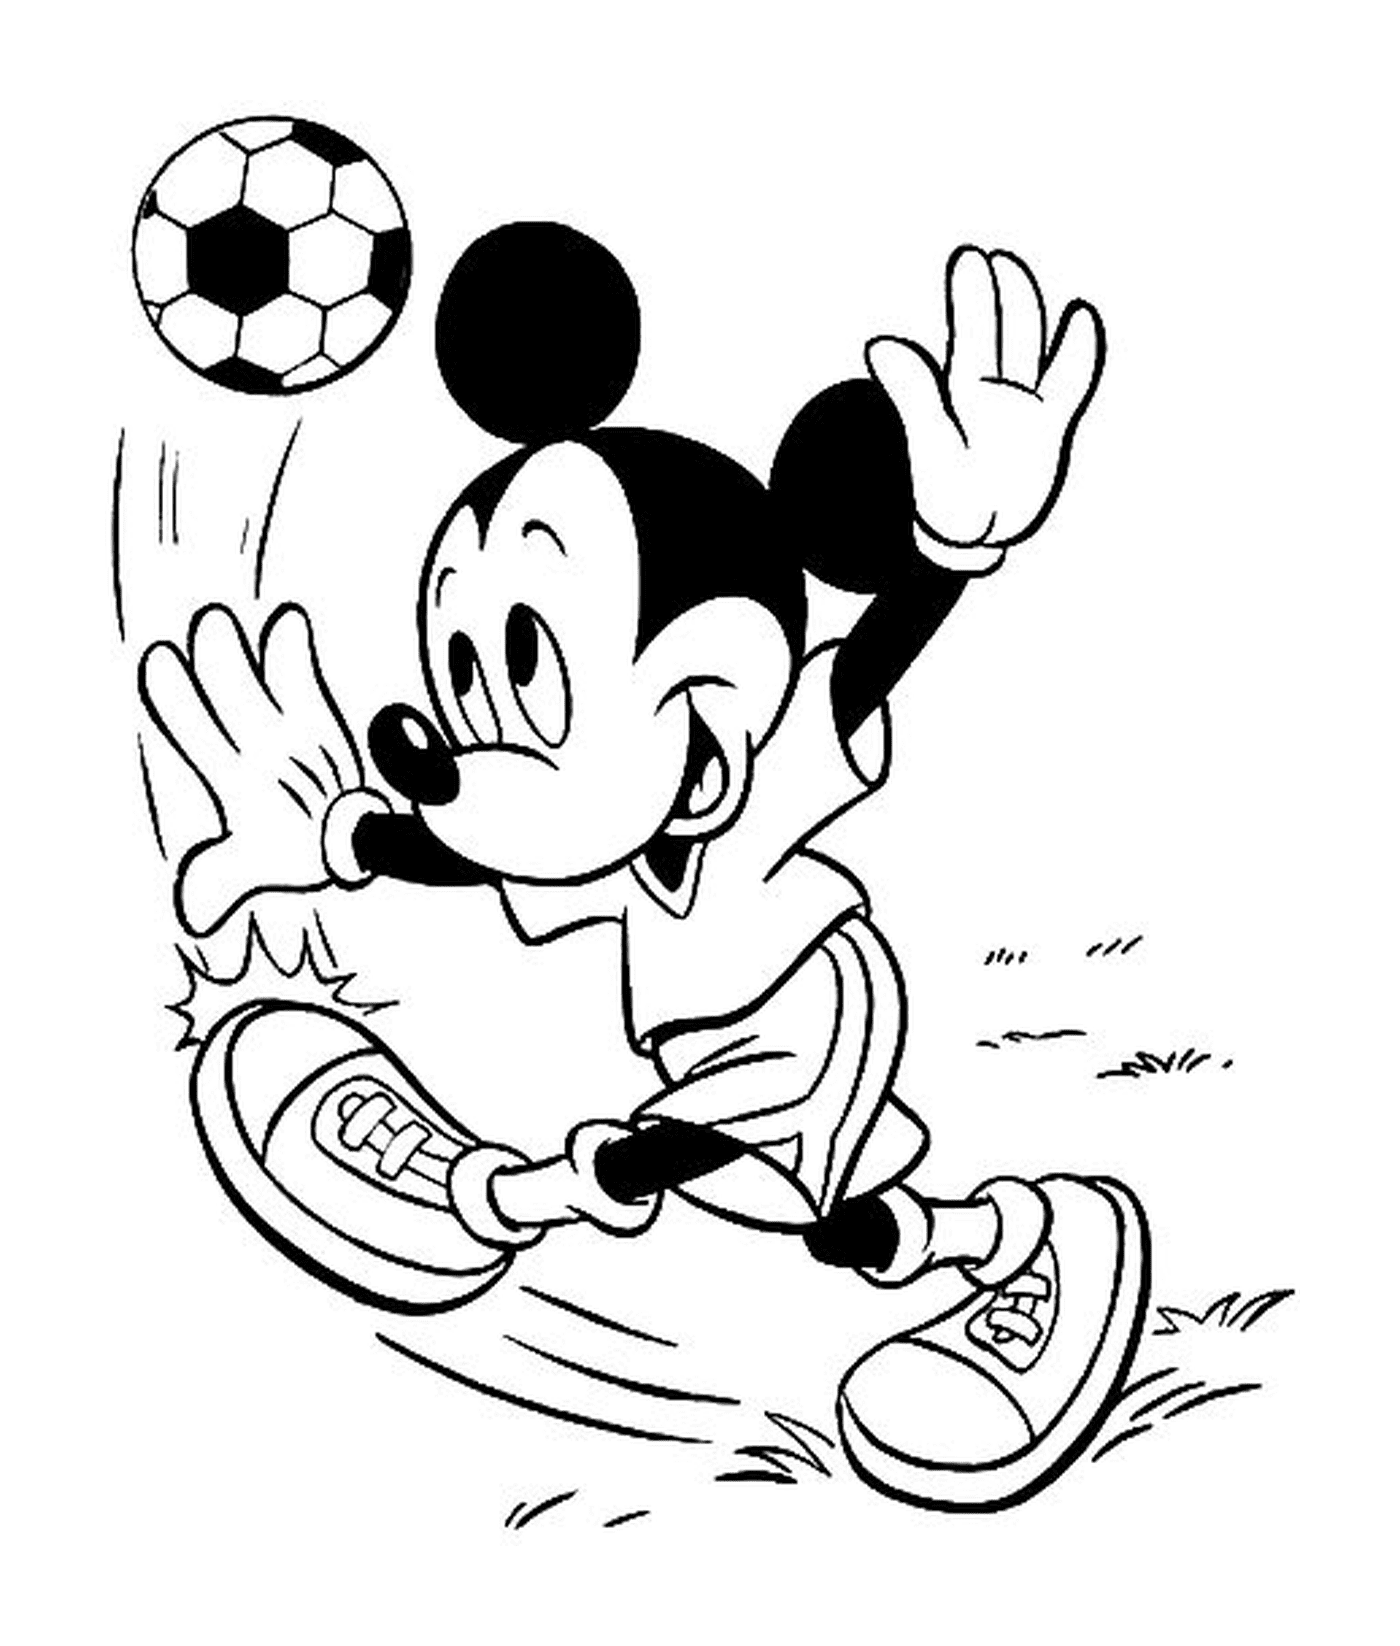  Микки Маус играет в футбол 